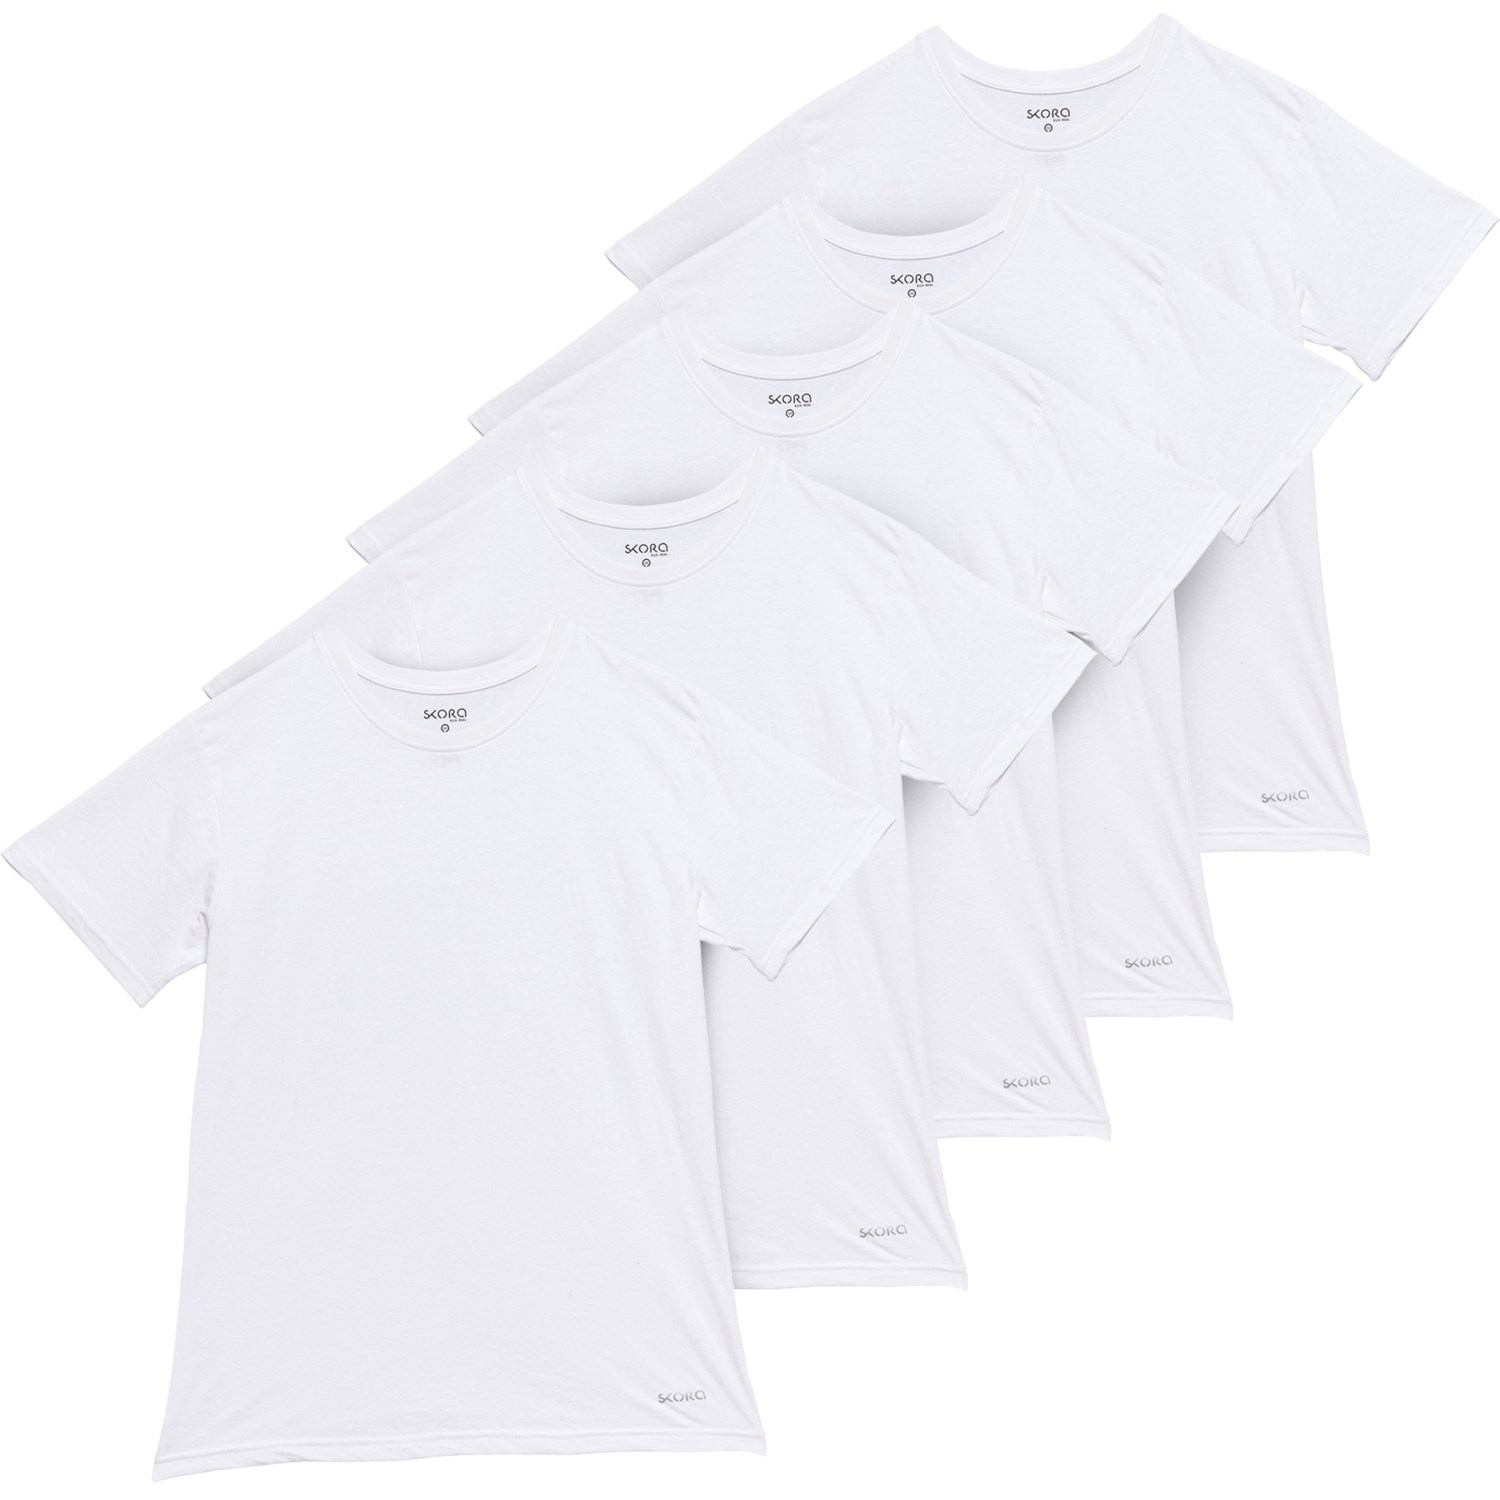 ■商品詳細■ブランドSkoraスコラ■商品名Cotton Blend Undershirts - 5-Pack, Short Sleeve コットン ブレンド アンダーシャツ - 5-パック, ショート スリーブ■商品状態新品未使用・並行輸入品■色White2枚目以降は参考画像となります。詳細非常に柔らかく通気性に優れたコットンポリジャージー-クルーネックライン-快適なタグ-フリー-ストレートヘム-1 パックあたりシャツ 5 枚-バングラデシュ製■備考(取寄) スコラ コットン ブレンド アンダーシャツ - 5-パック, ショート スリーブ Skora Cotton Blend Undershirts - 5-Pack, Short Sleeve WhiteSkora メンズ Tシャツ トップス カットソー ブランド カジュアル ファッション 男性 大きいサイズ ビックサイズsi-4awvx